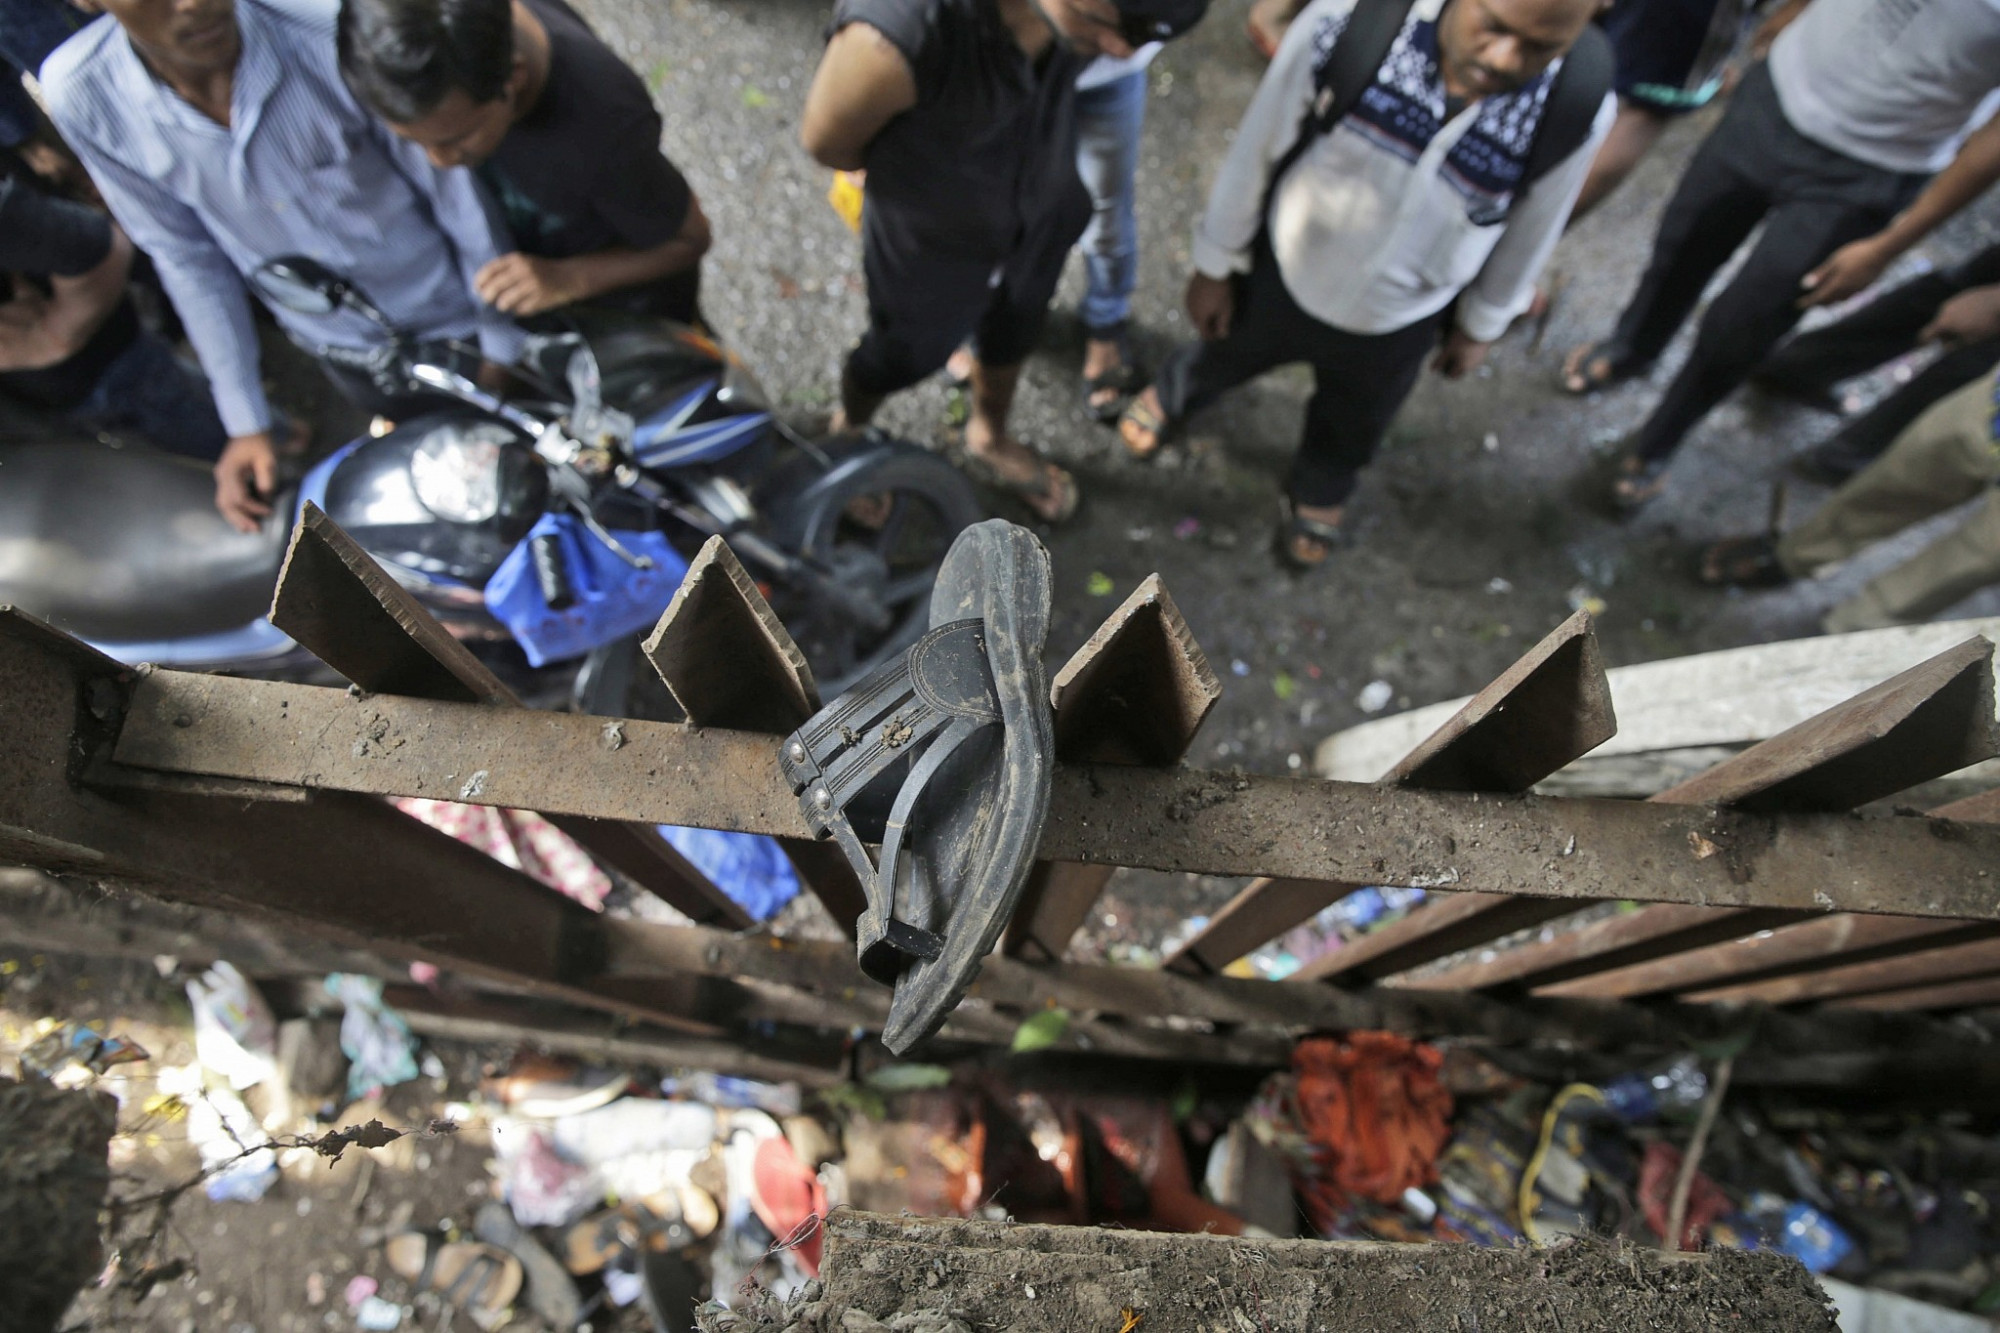 Đến giờ, người dân Ấn Độ vẫn chưa quên được vụ giẫm đạp trên cầu dành cho người đi bộ đông đúc, nối liền hai nhà ga xe lửa Mumbai khiến 22 người thiệt mạng và 32 người bị thương. Vụ việc xảy ra trong giờ cao điểm buổi sáng ngày 29/9/2017. Cảnh sát cho biết một số hành khách đã nhảy qua lan can trong khi những người khác bị đè bẹp hoặc ngã dưới chân và bị giẫm đạp.